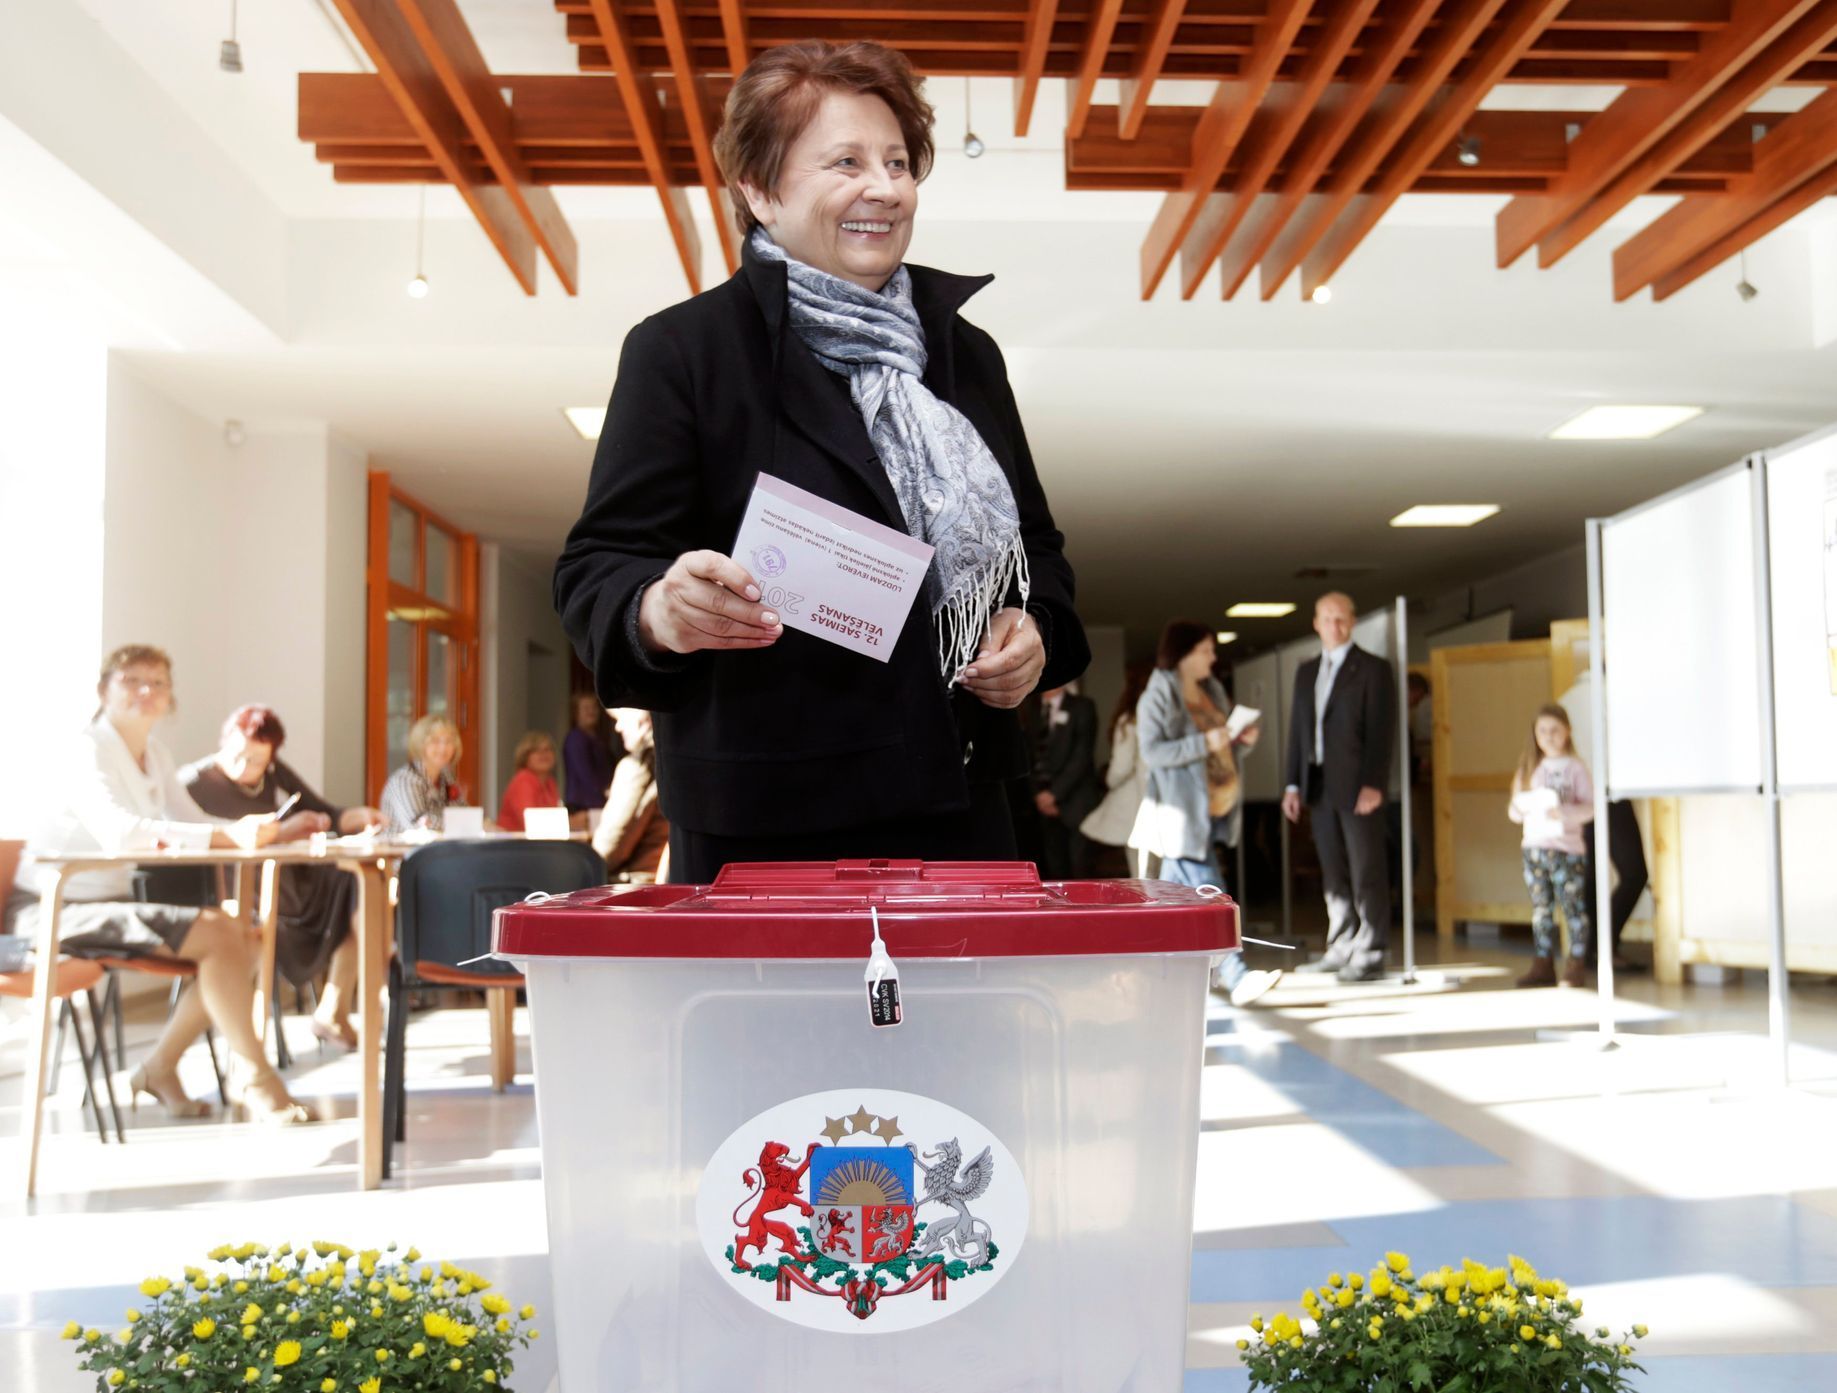 Lotyšská premiérka Laimdota Straujumaová při volbách 2014